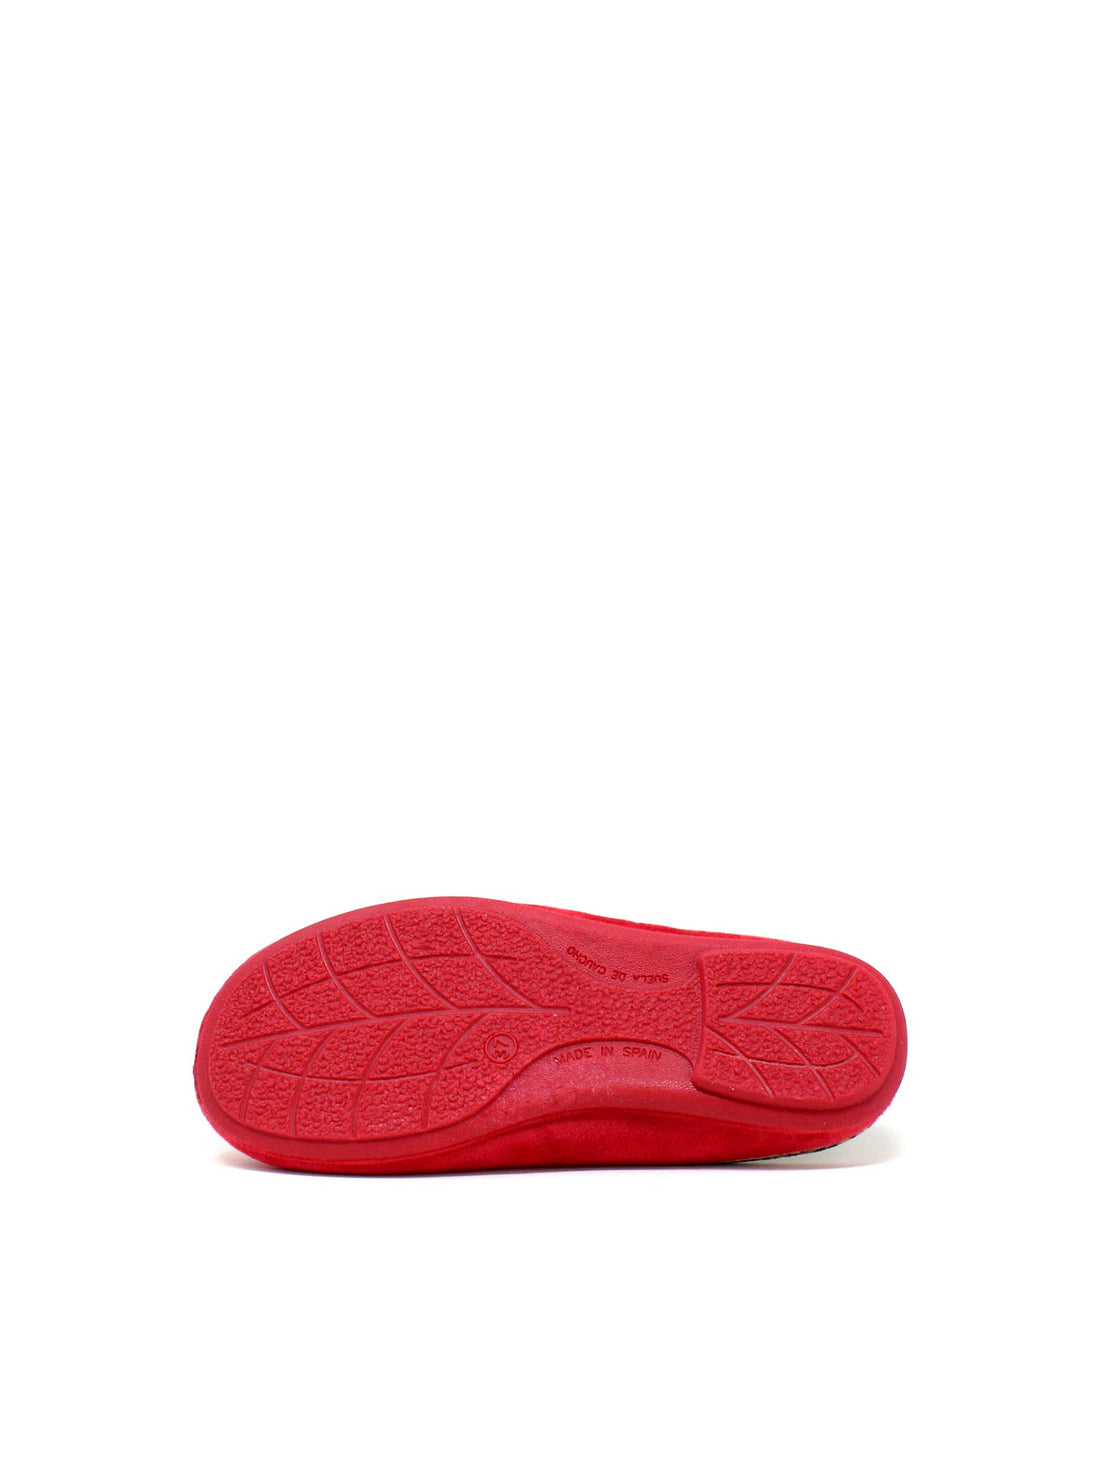 Pantofole Rosso Susimoda